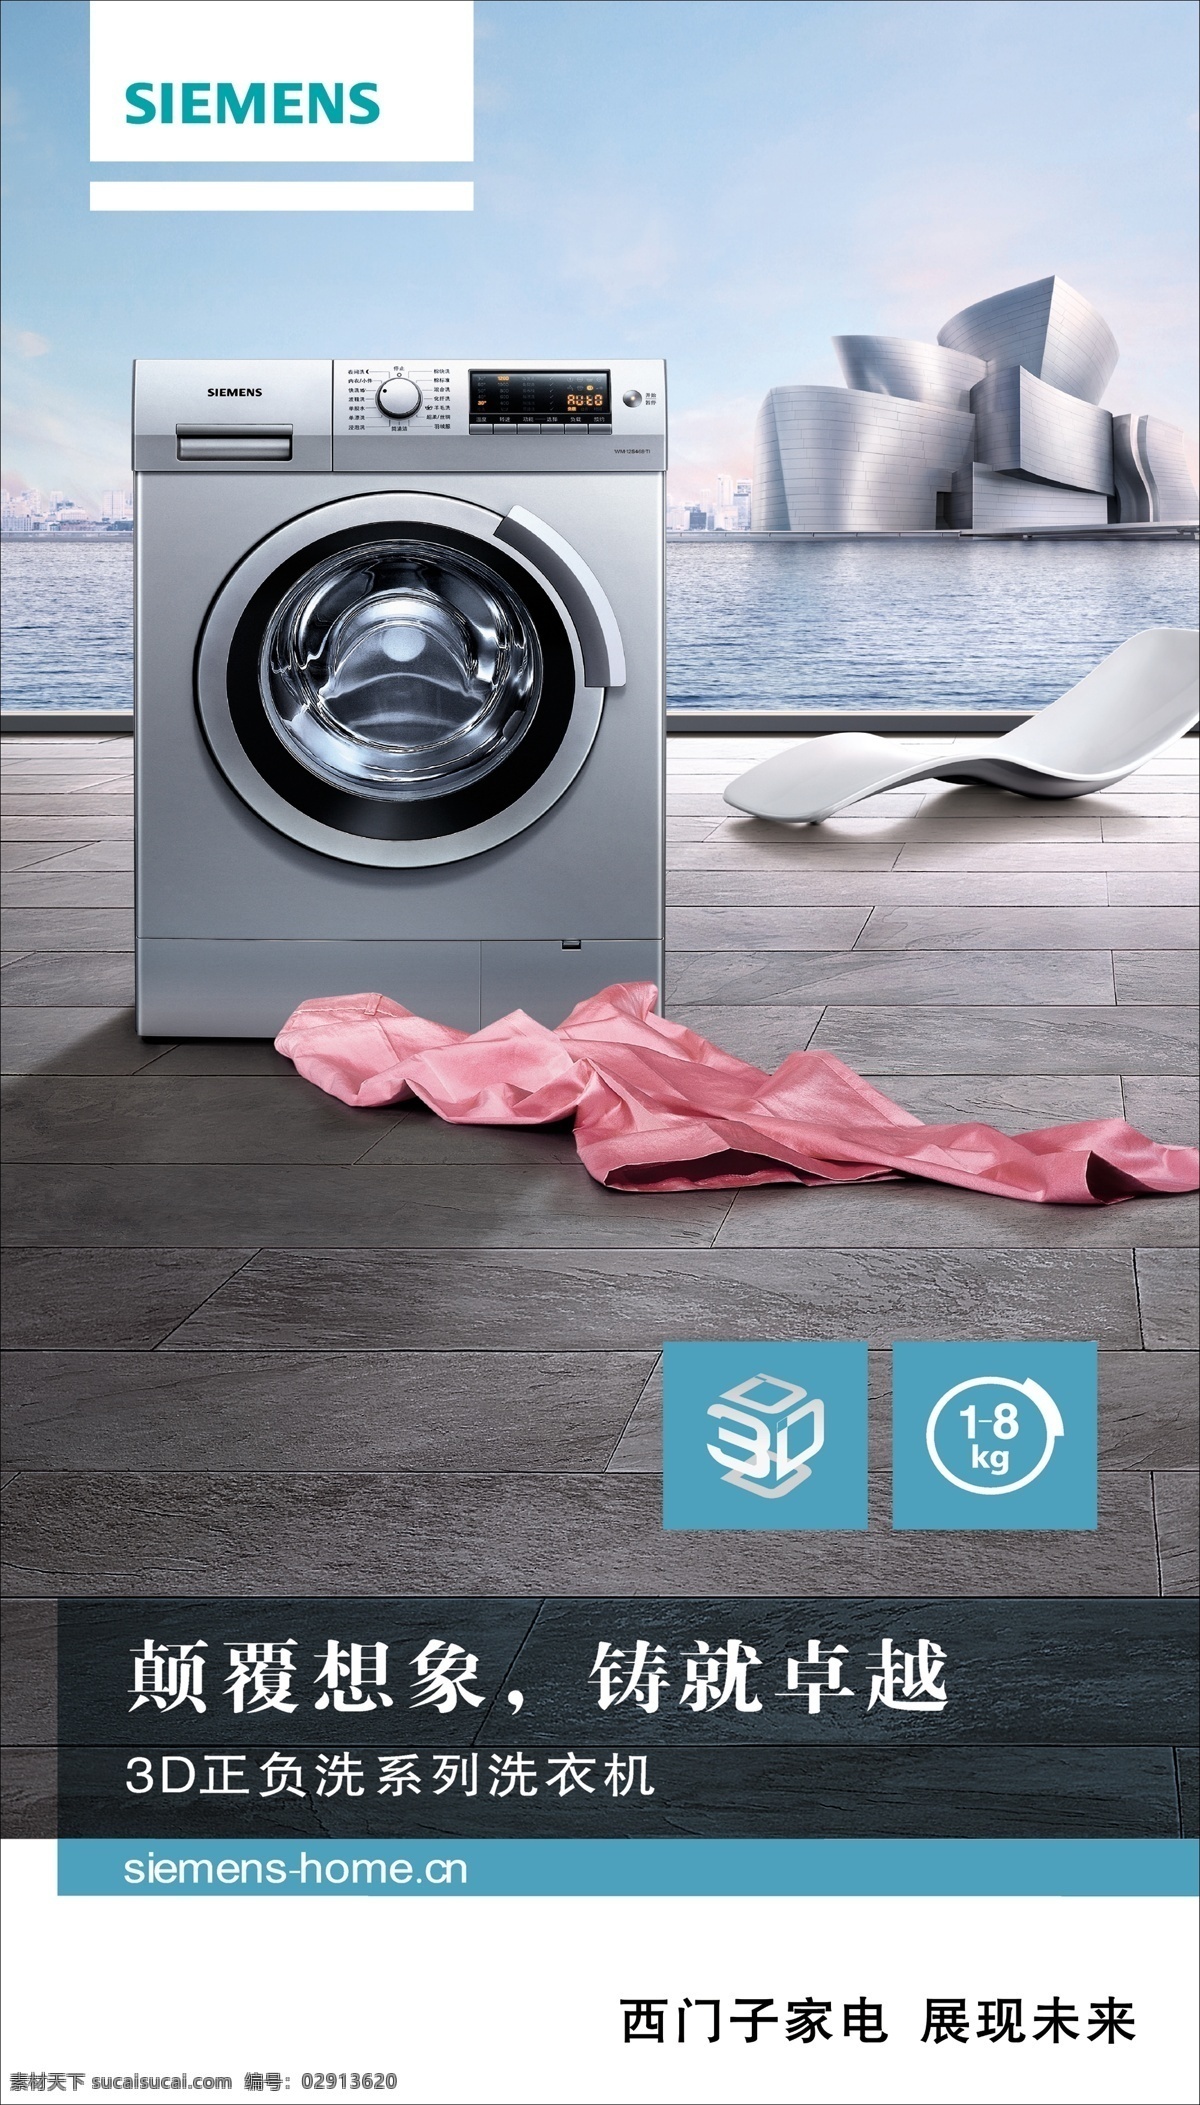 西门子家电 海报 洗衣机 西门子标志 海 展现未来 西门子